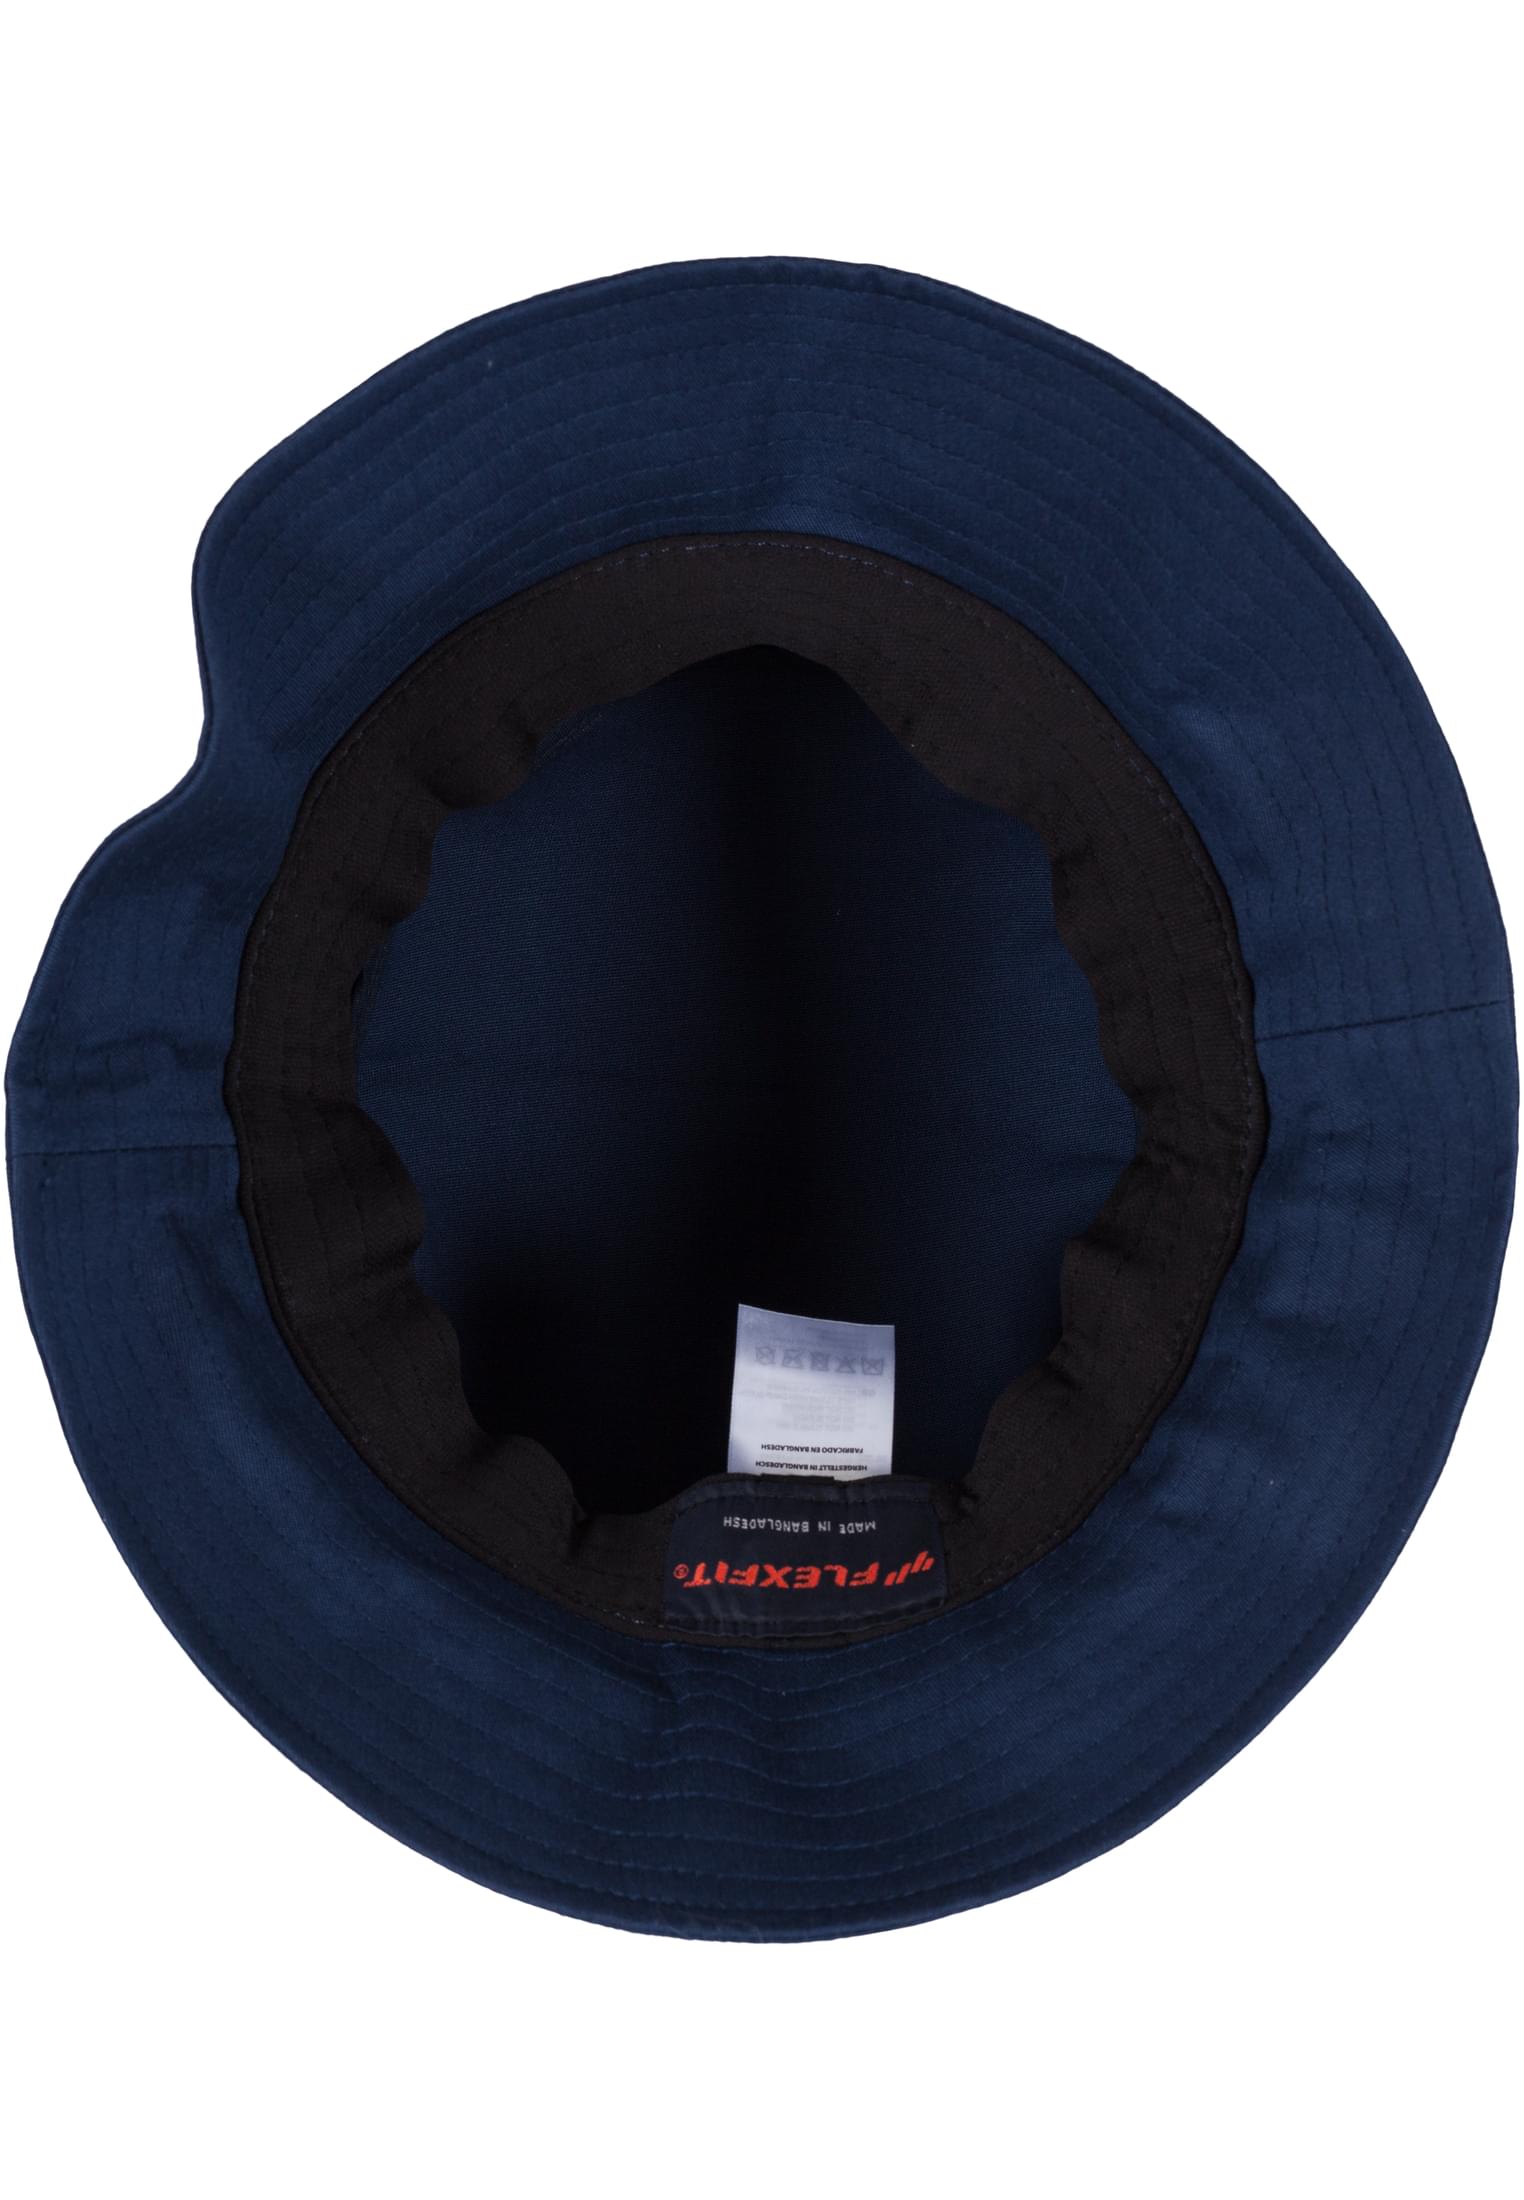 Cotton Flexfit Bucket Hat-5003 Twill